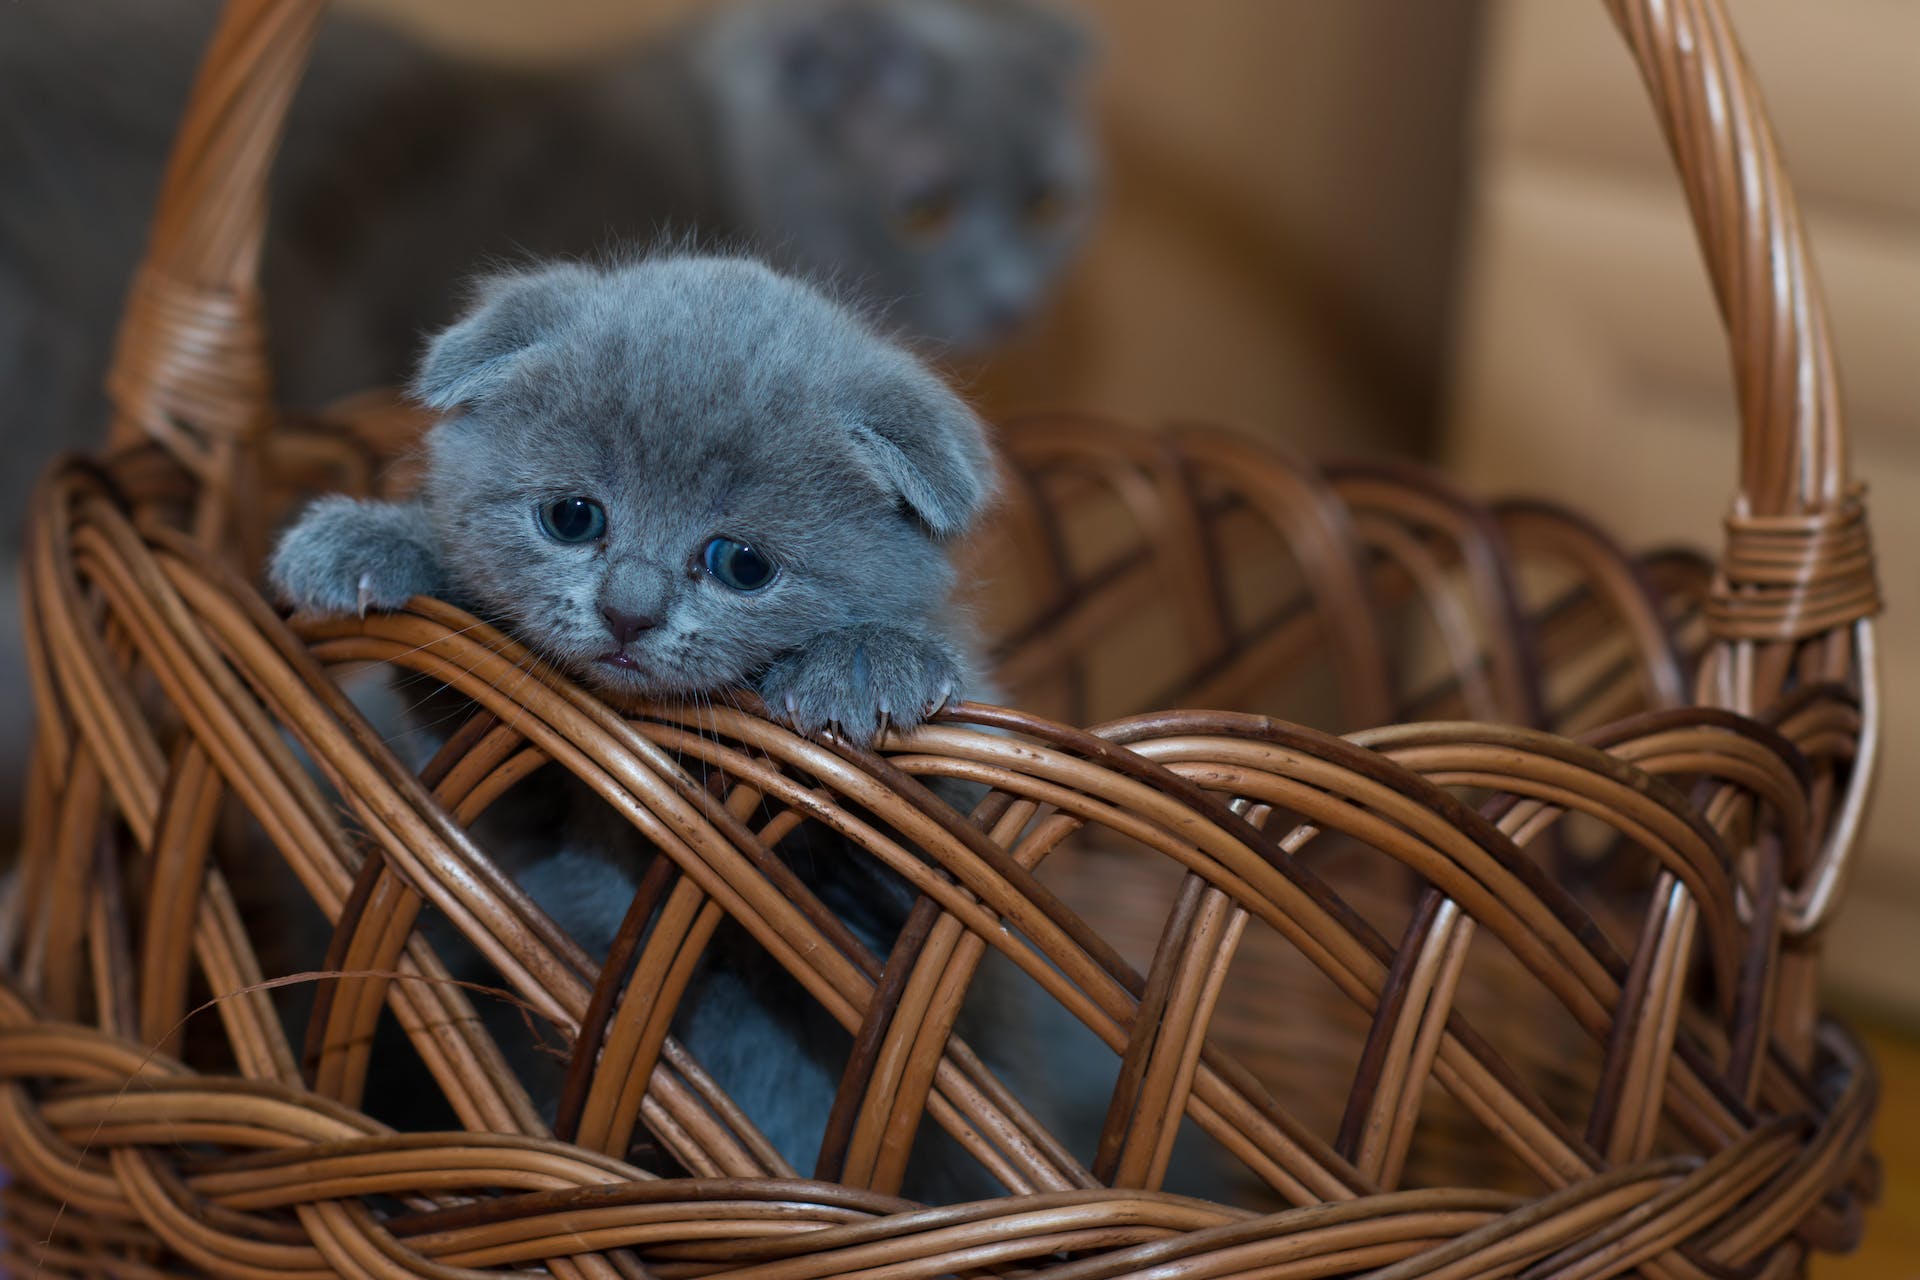 A sad kitten sitting inside a wicker basket